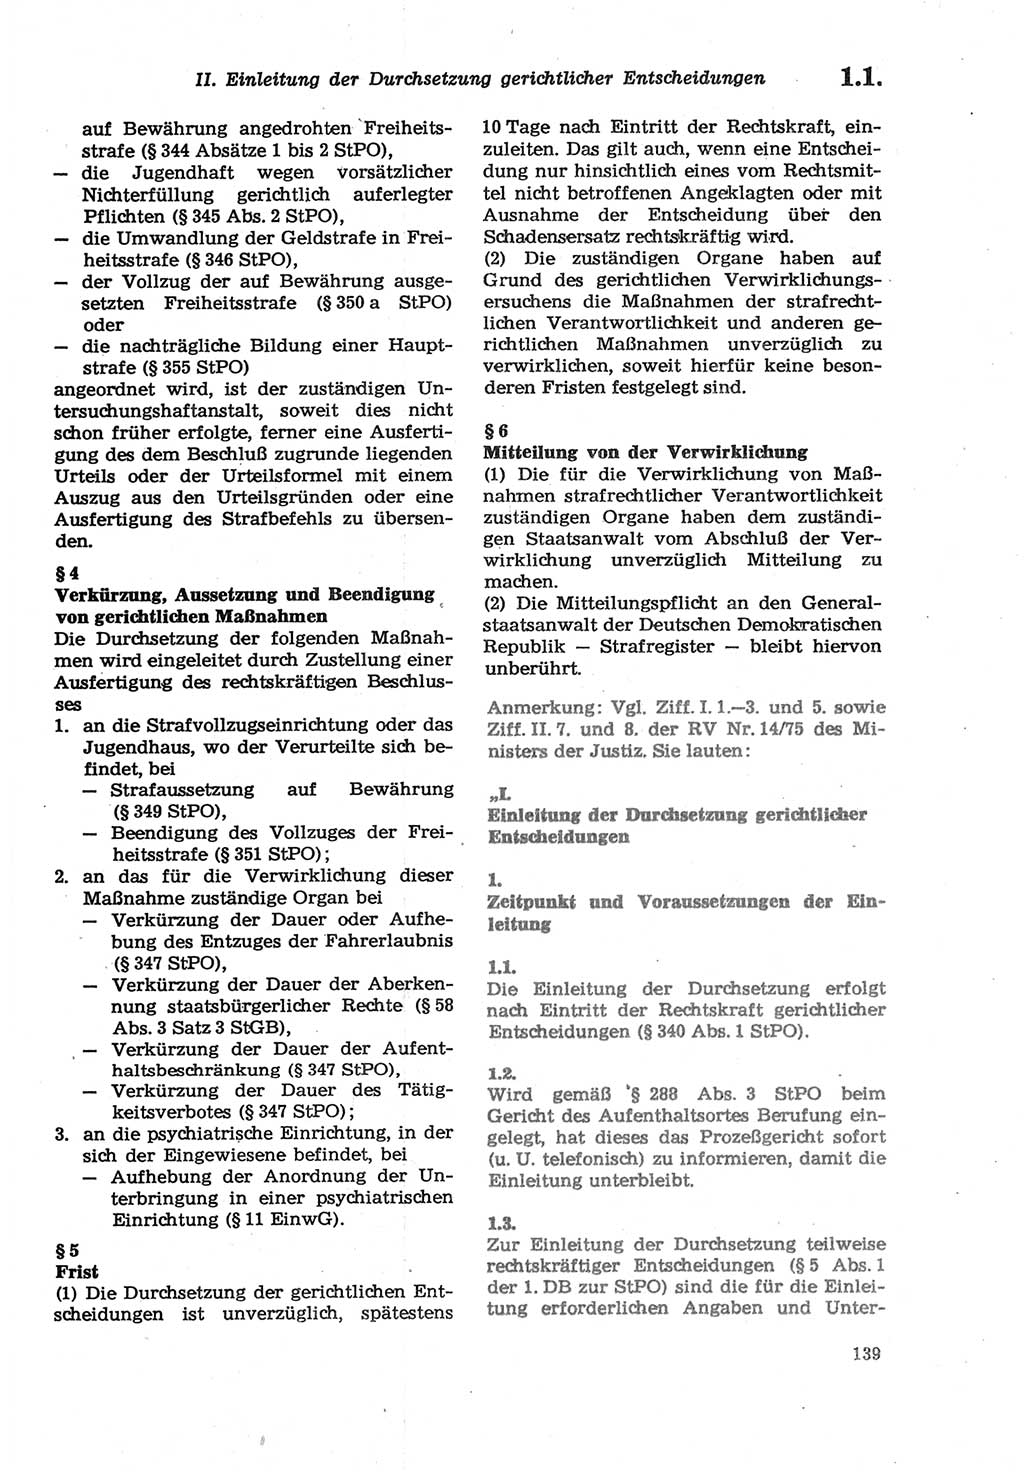 Strafprozeßordnung (StPO) der Deutschen Demokratischen Republik (DDR) sowie angrenzende Gesetze und Bestimmungen 1979, Seite 139 (StPO DDR Ges. Best. 1979, S. 139)